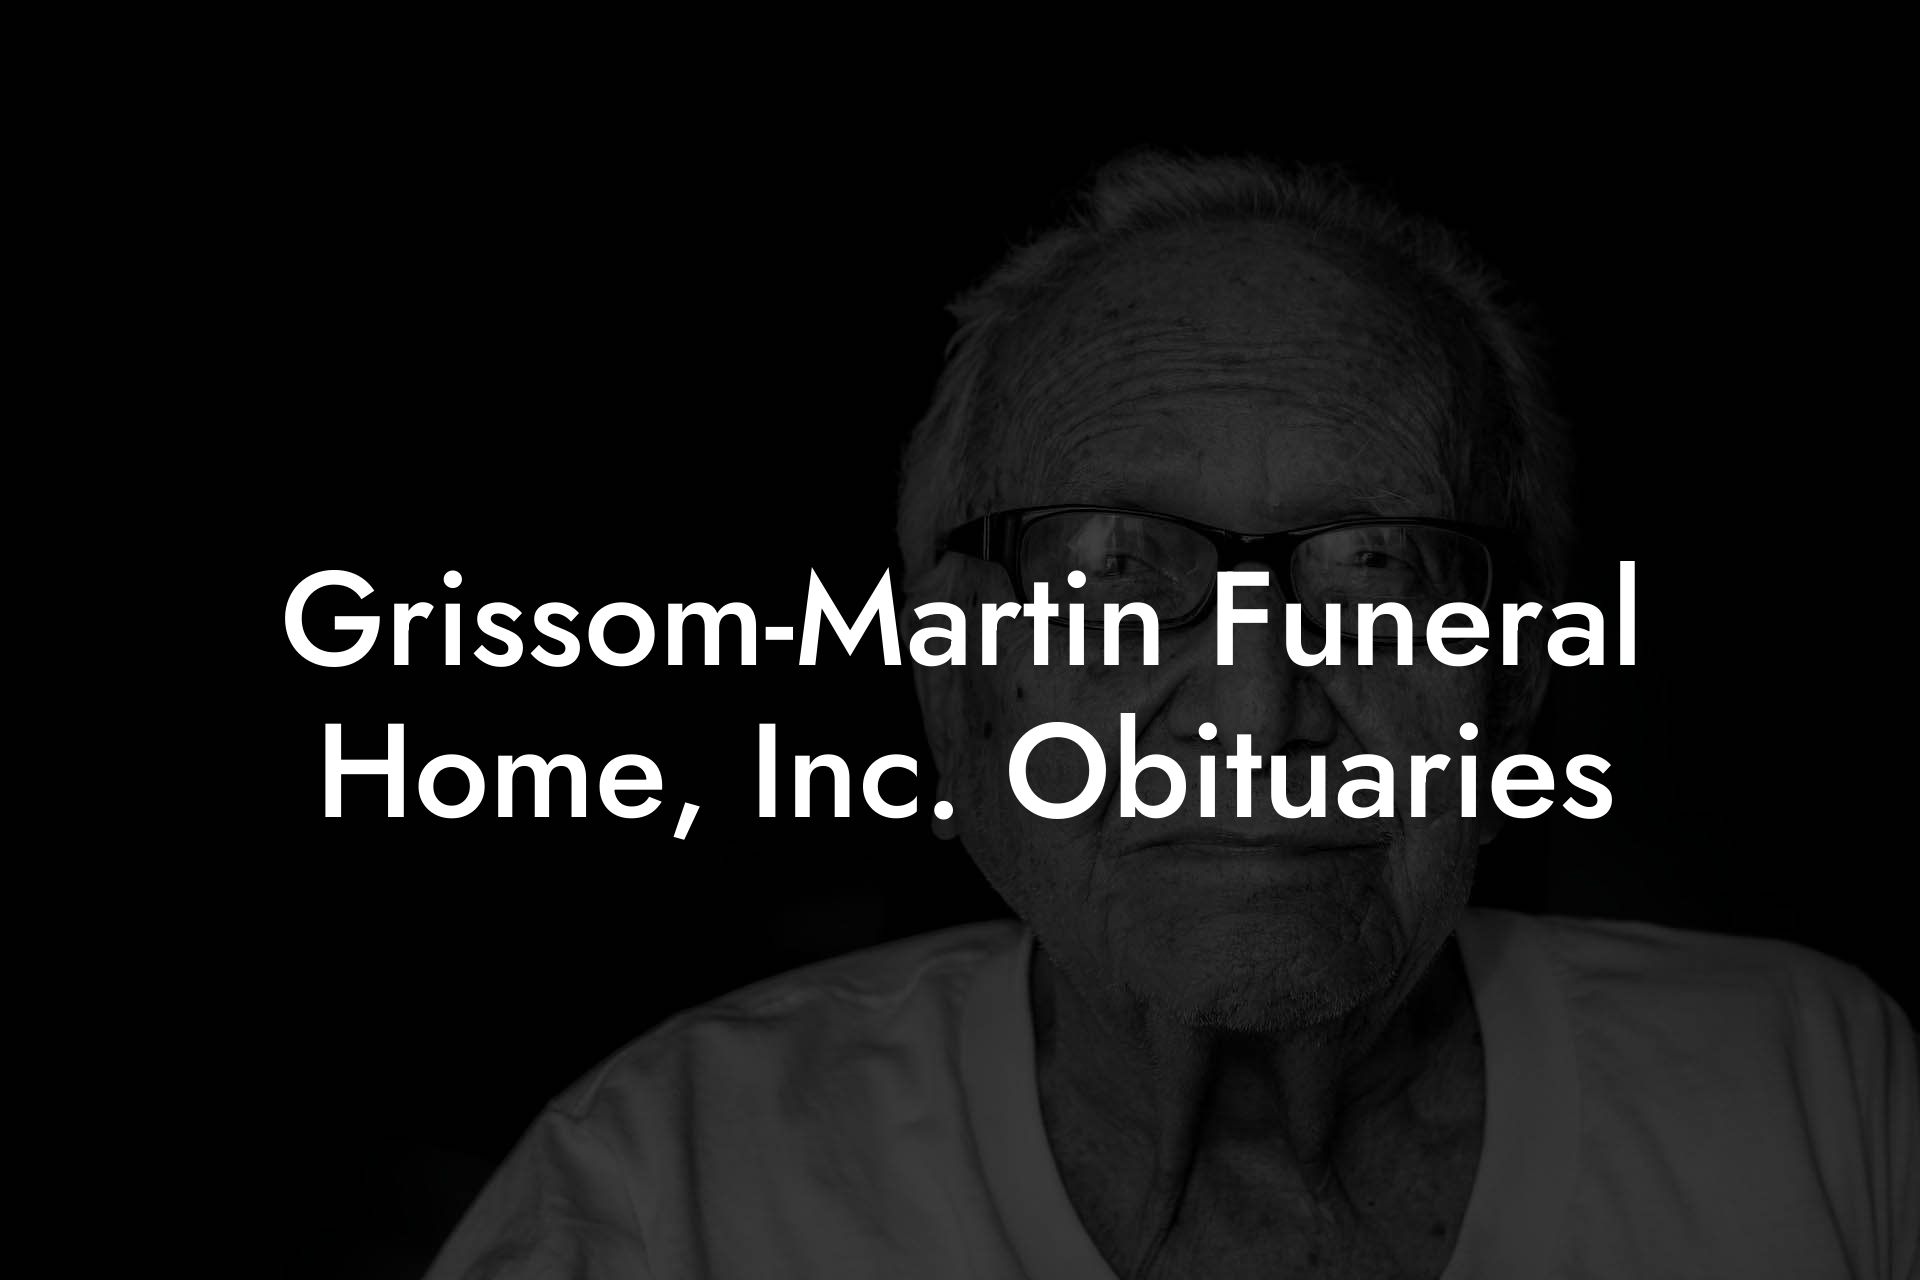 Grissom-Martin Funeral Home, Inc. Obituaries